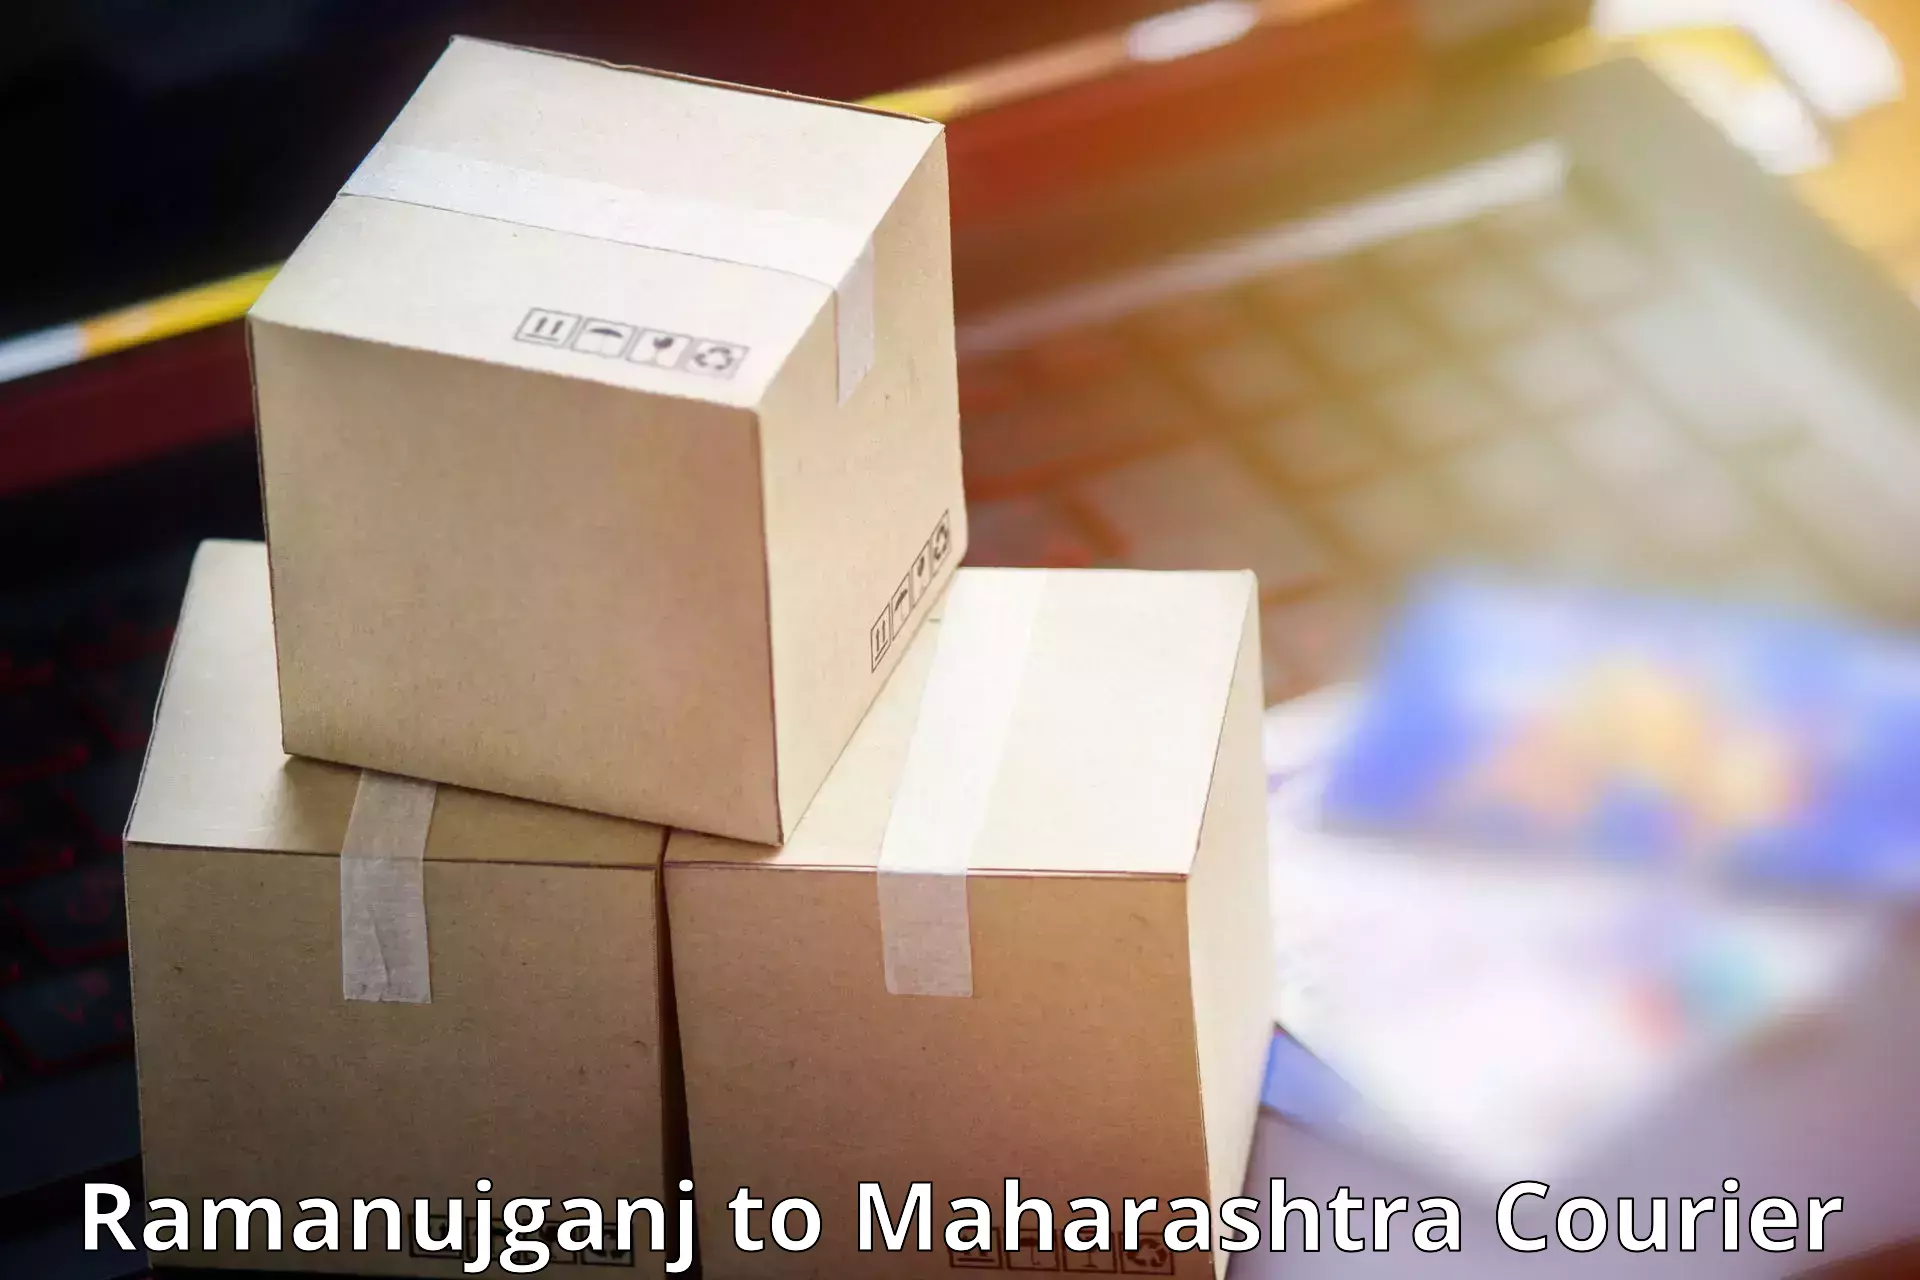 Pharmaceutical courier Ramanujganj to Lanja